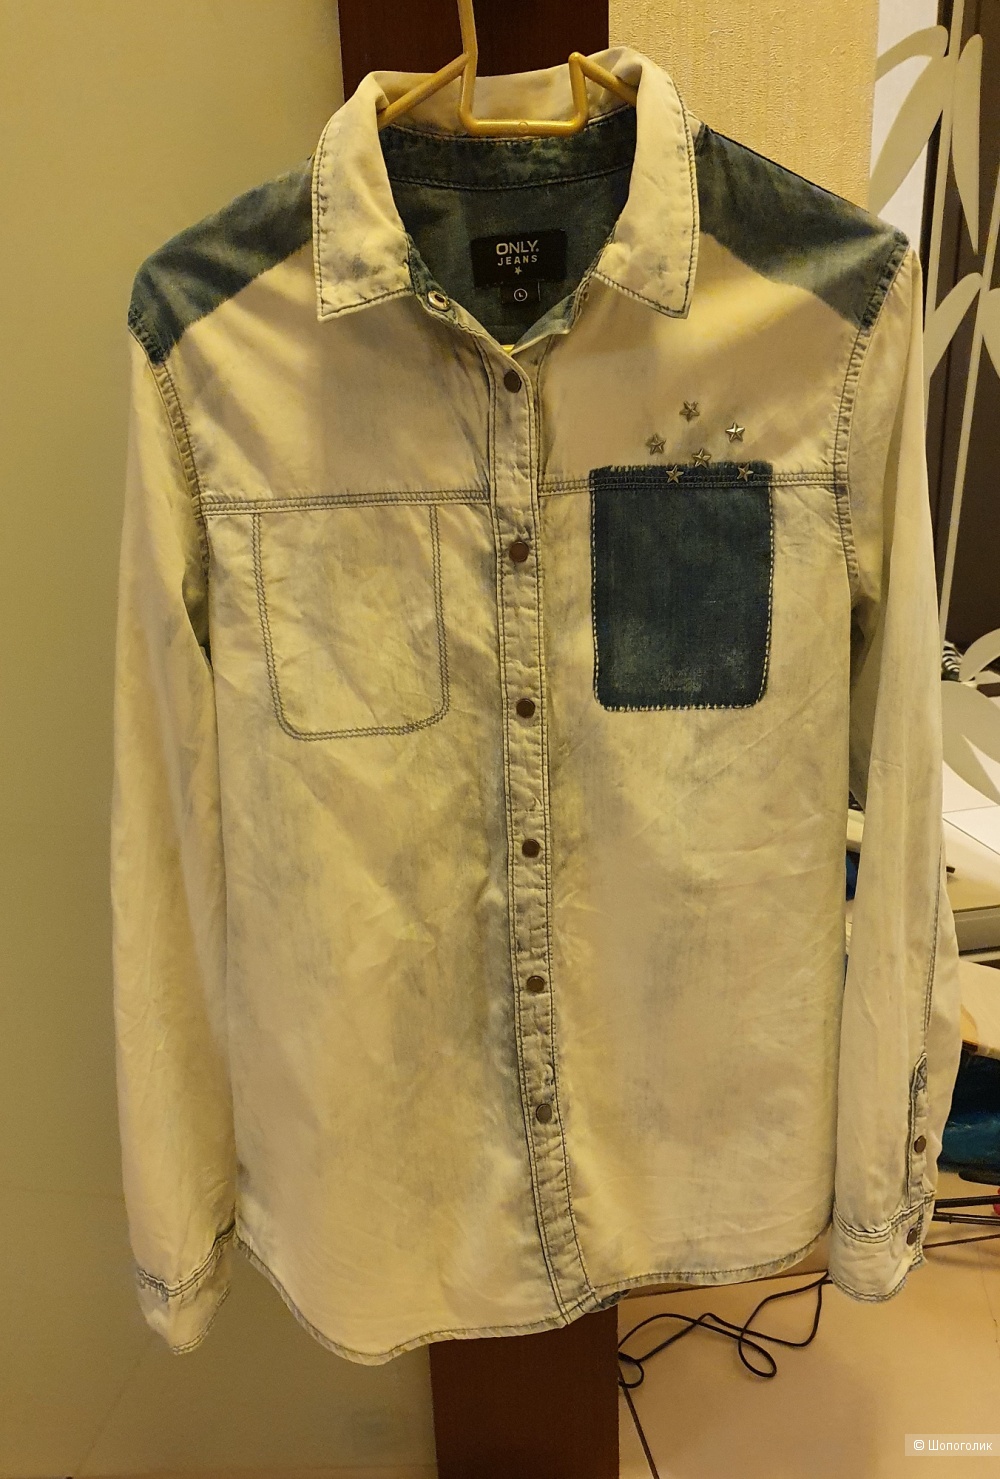 Джинсовая рубашка Olny Jeans. Размер 44-46